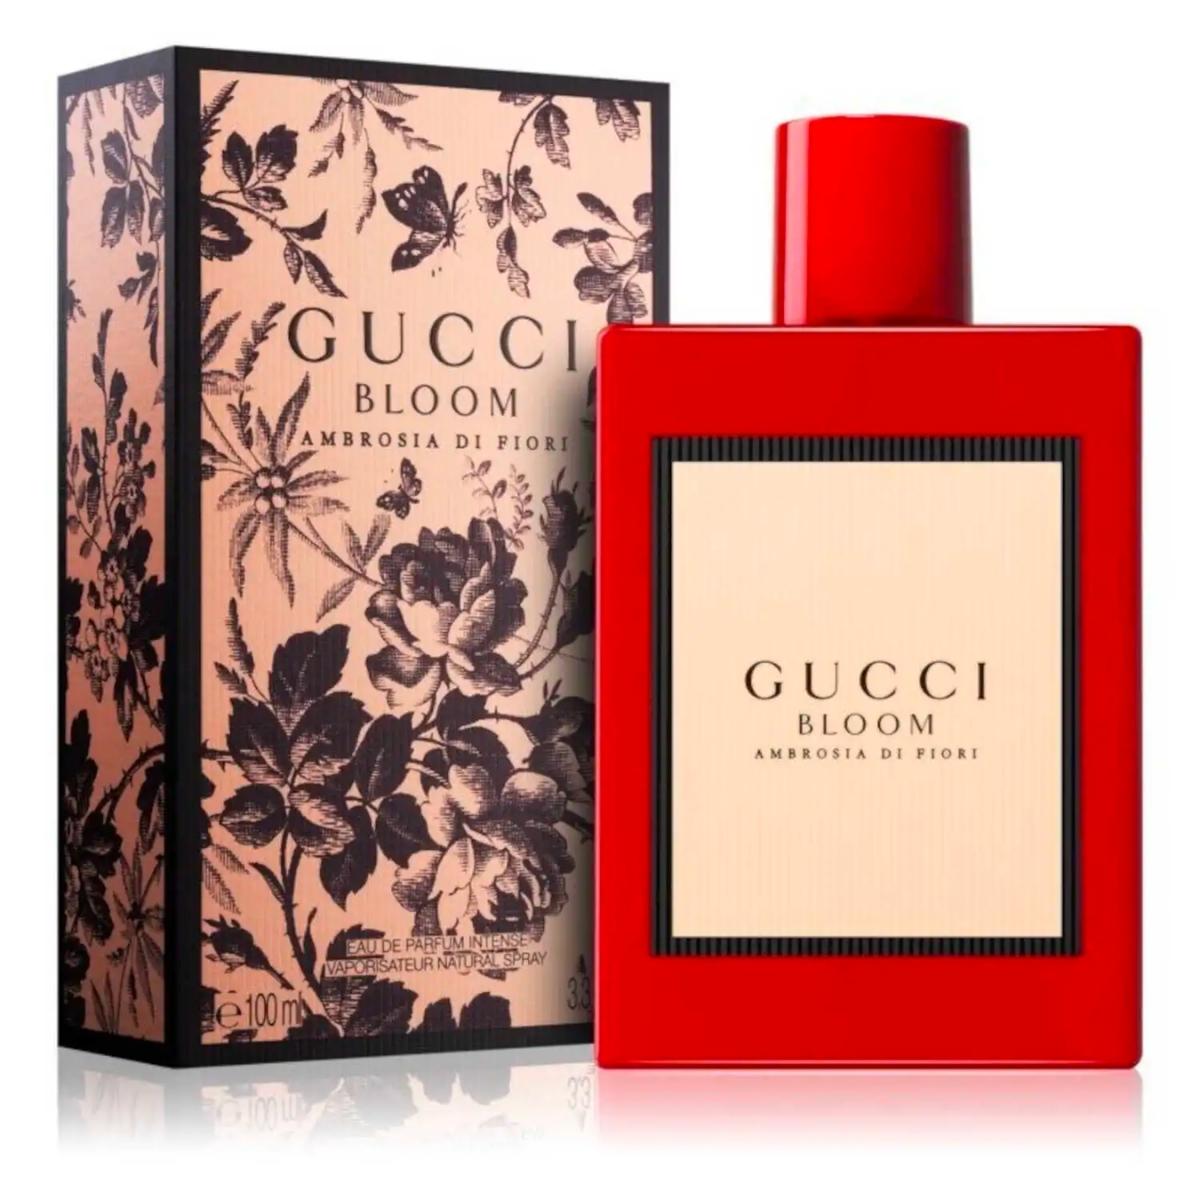 GUCCI BLOOM ambrosia di floria comes with brand box premium packaging